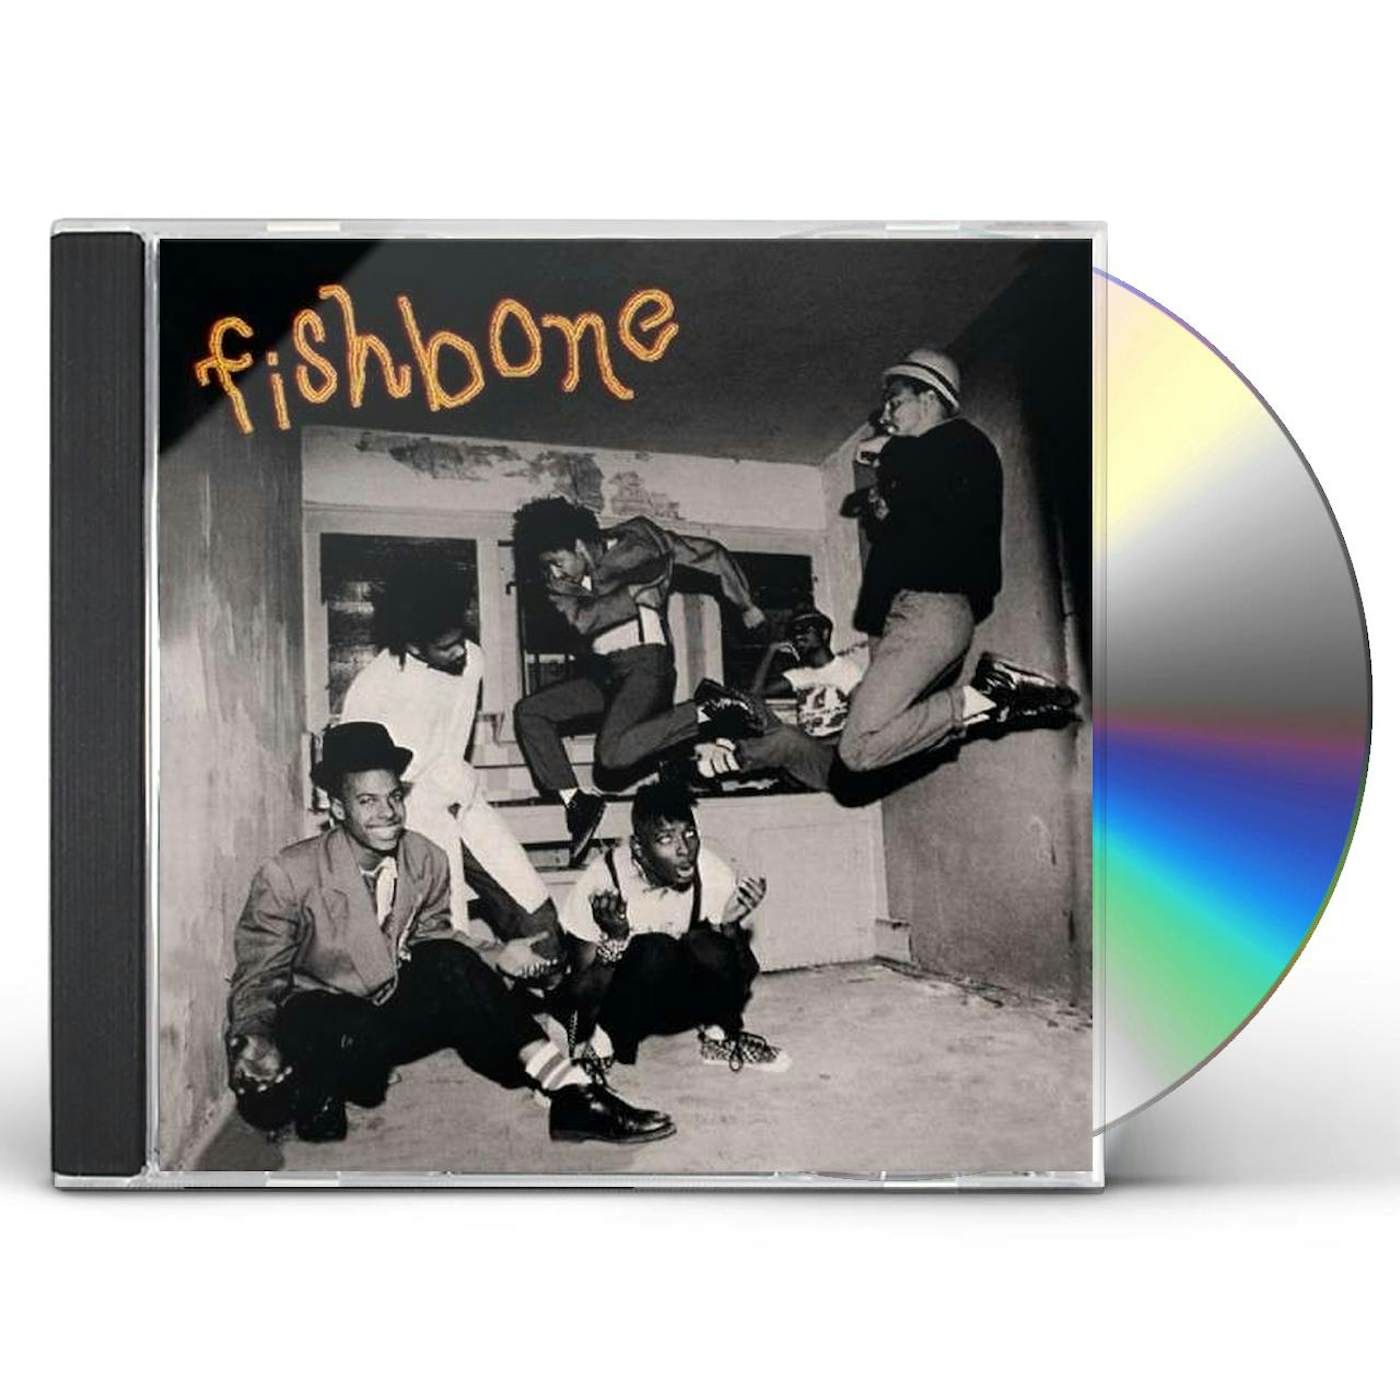 FISHBONE (24BIT REMASTERED) CD